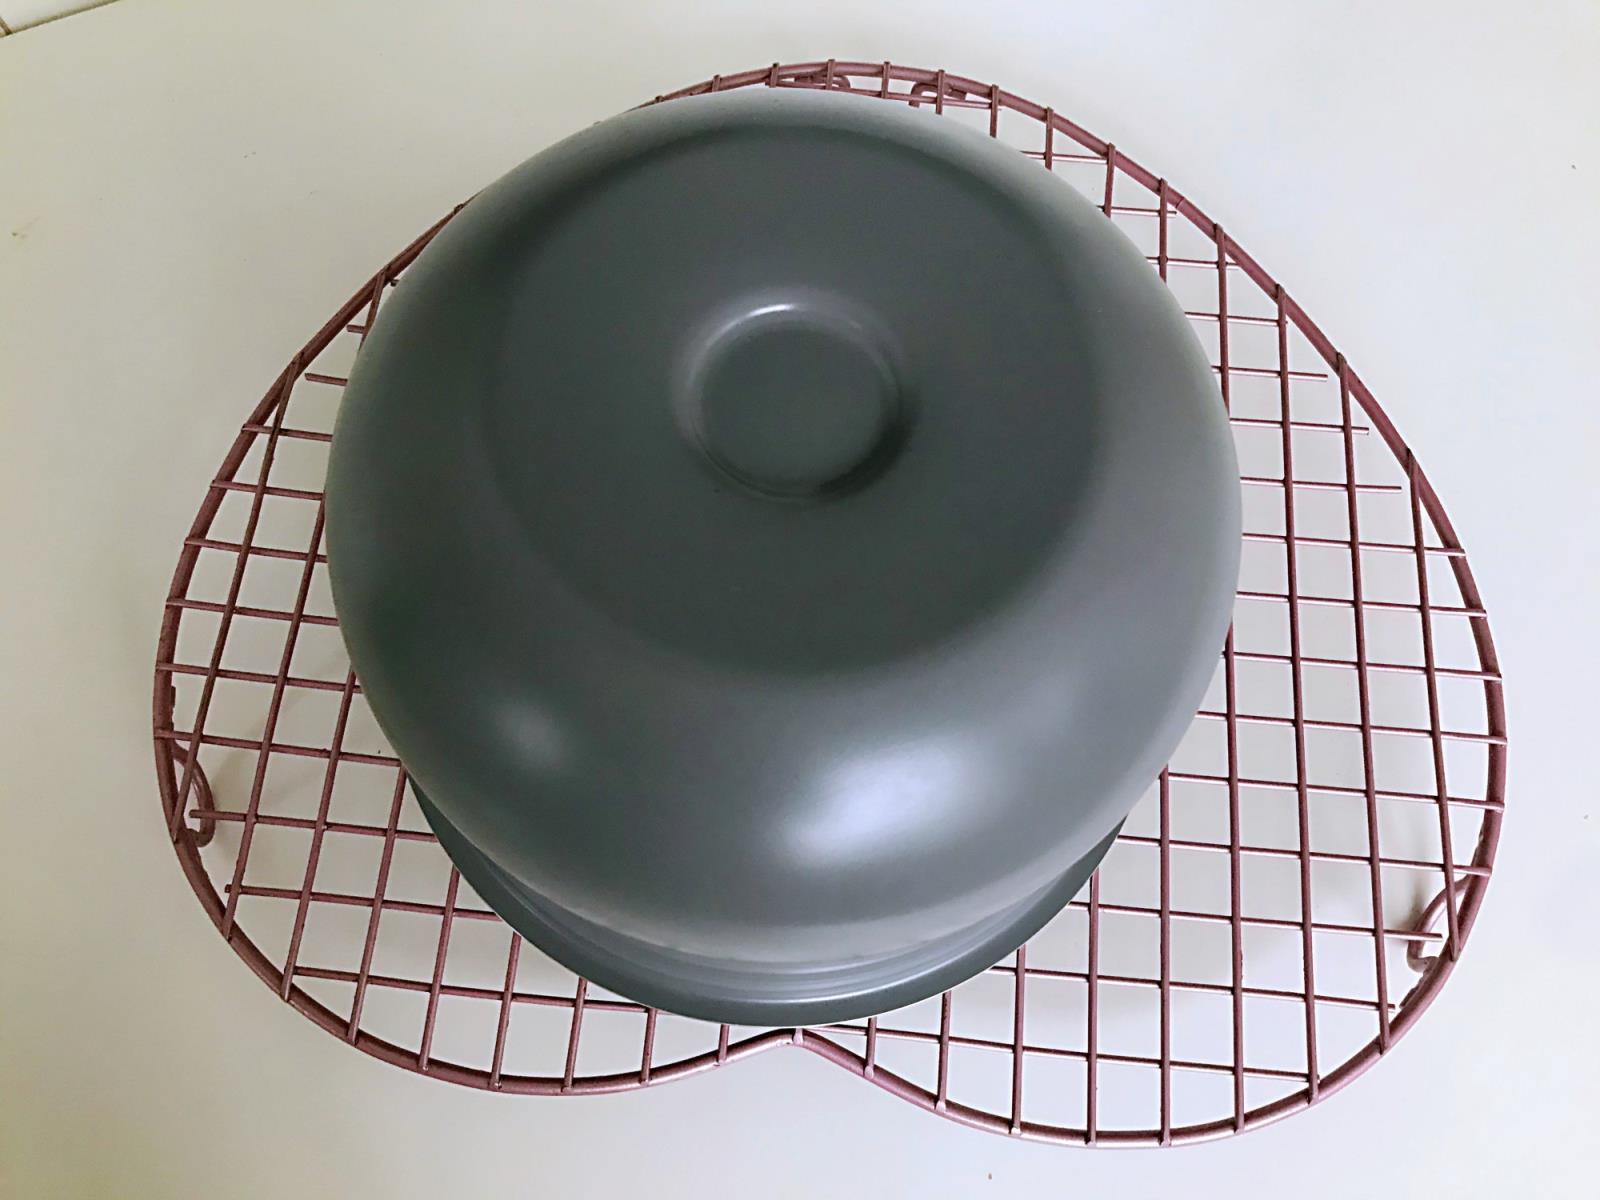 电压力锅怎么做蛋糕的方法(用电压力锅做蛋糕的步骤)